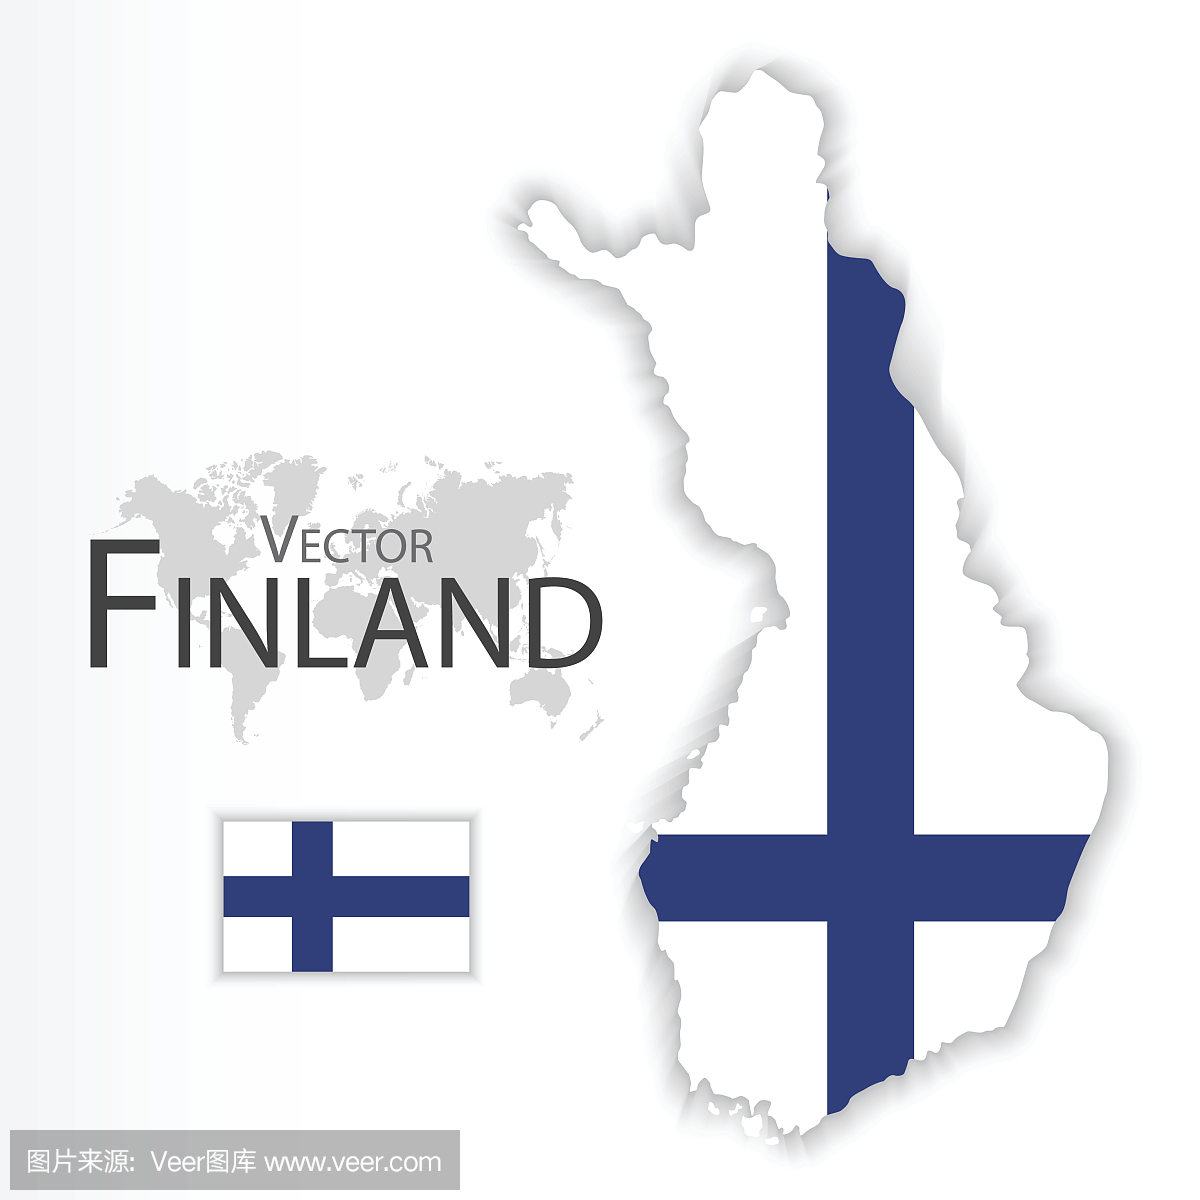 芬兰国徽 库存例证. 插画 包括有 国家（地区）, 联盟, 共和国, 象征, 国家, 腋窝, 查出, 芬兰 - 174043207